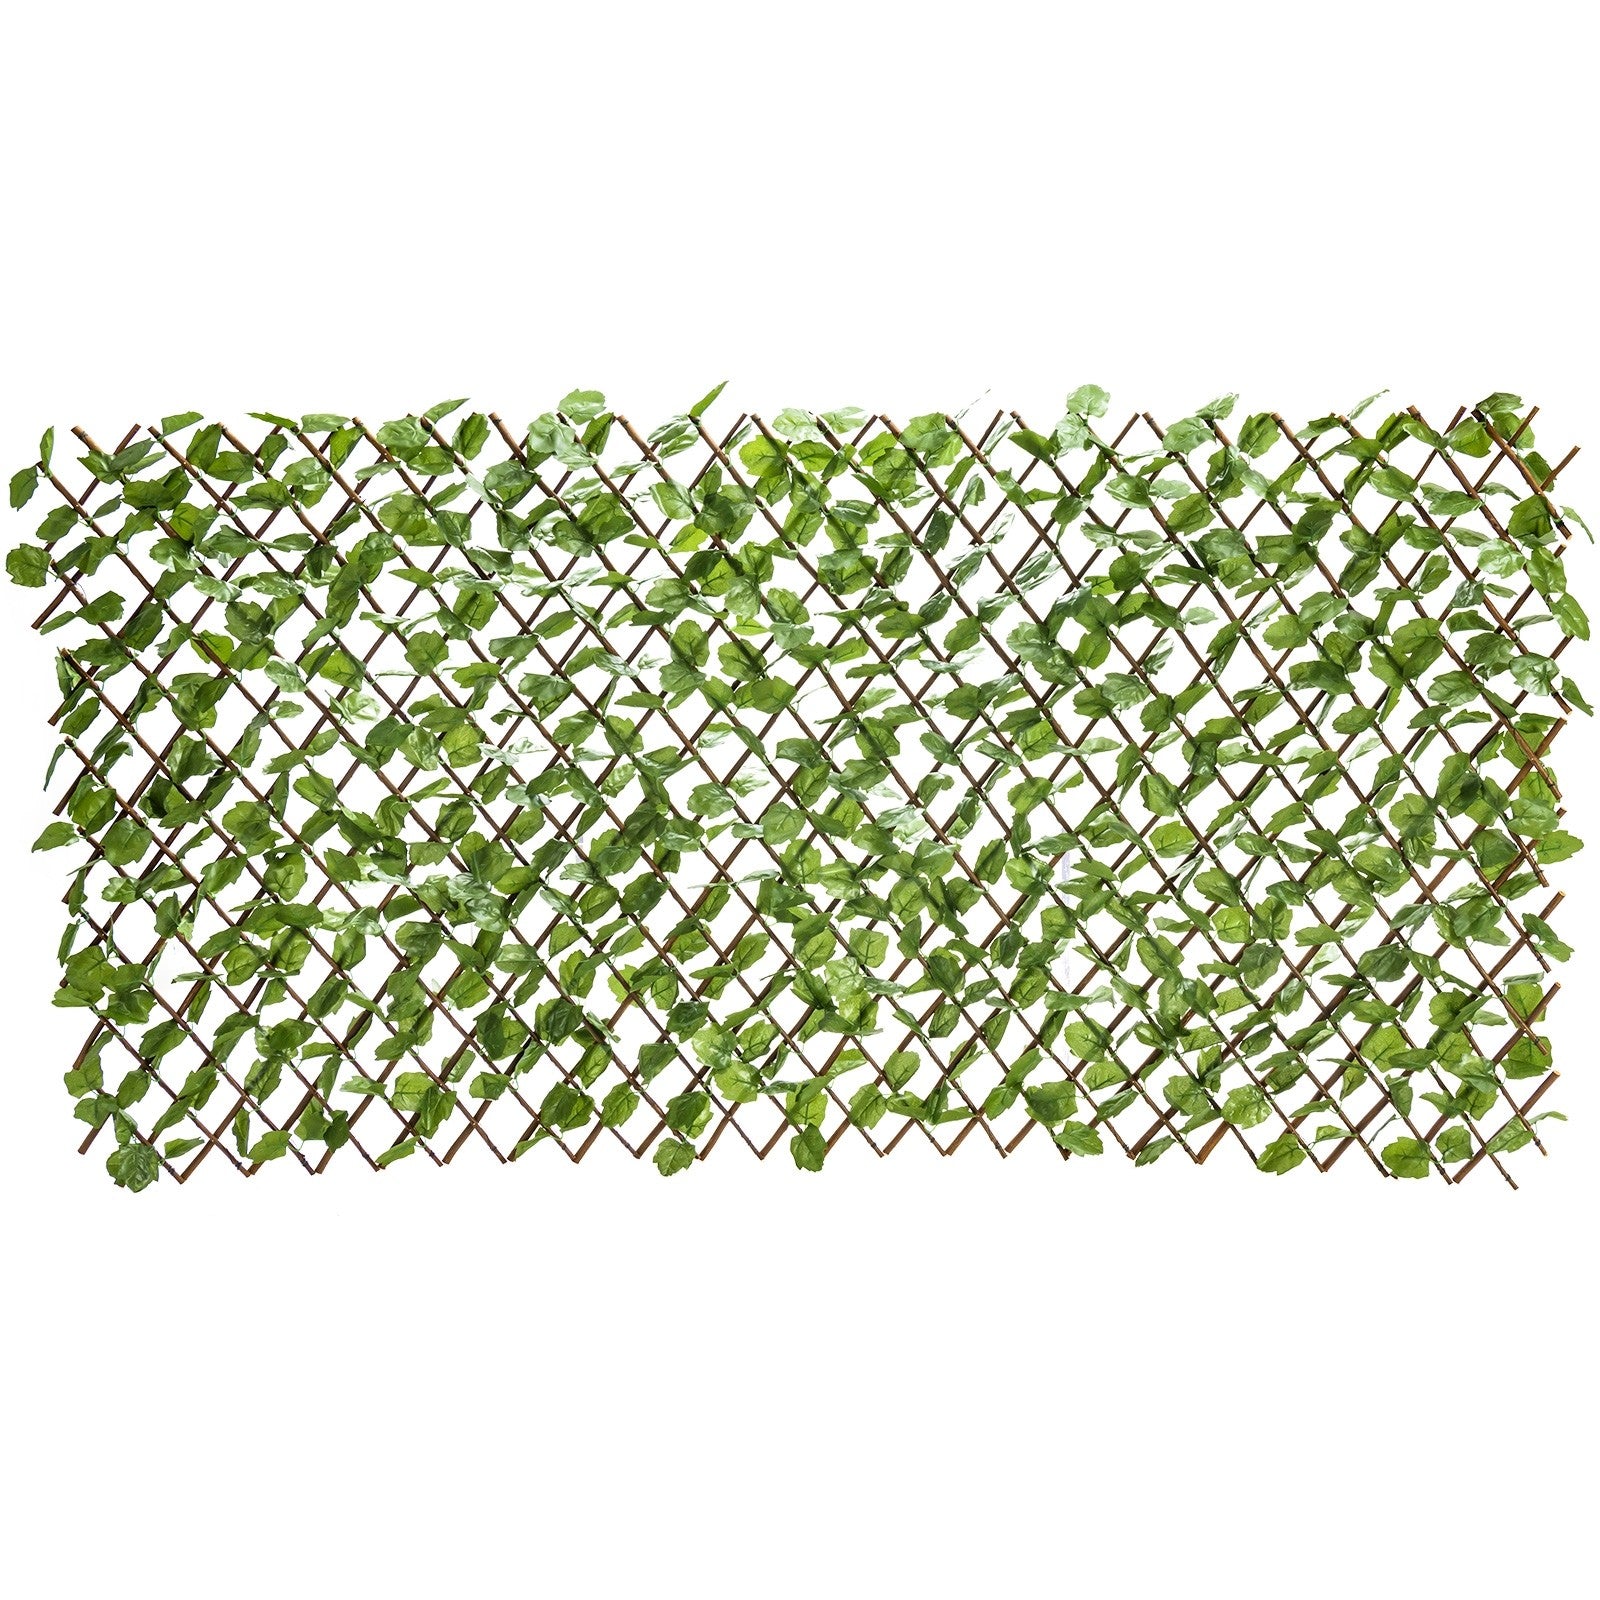 Giantex 3PCS Expandable Artificial Hedges Faux Ivy Leaves Fence